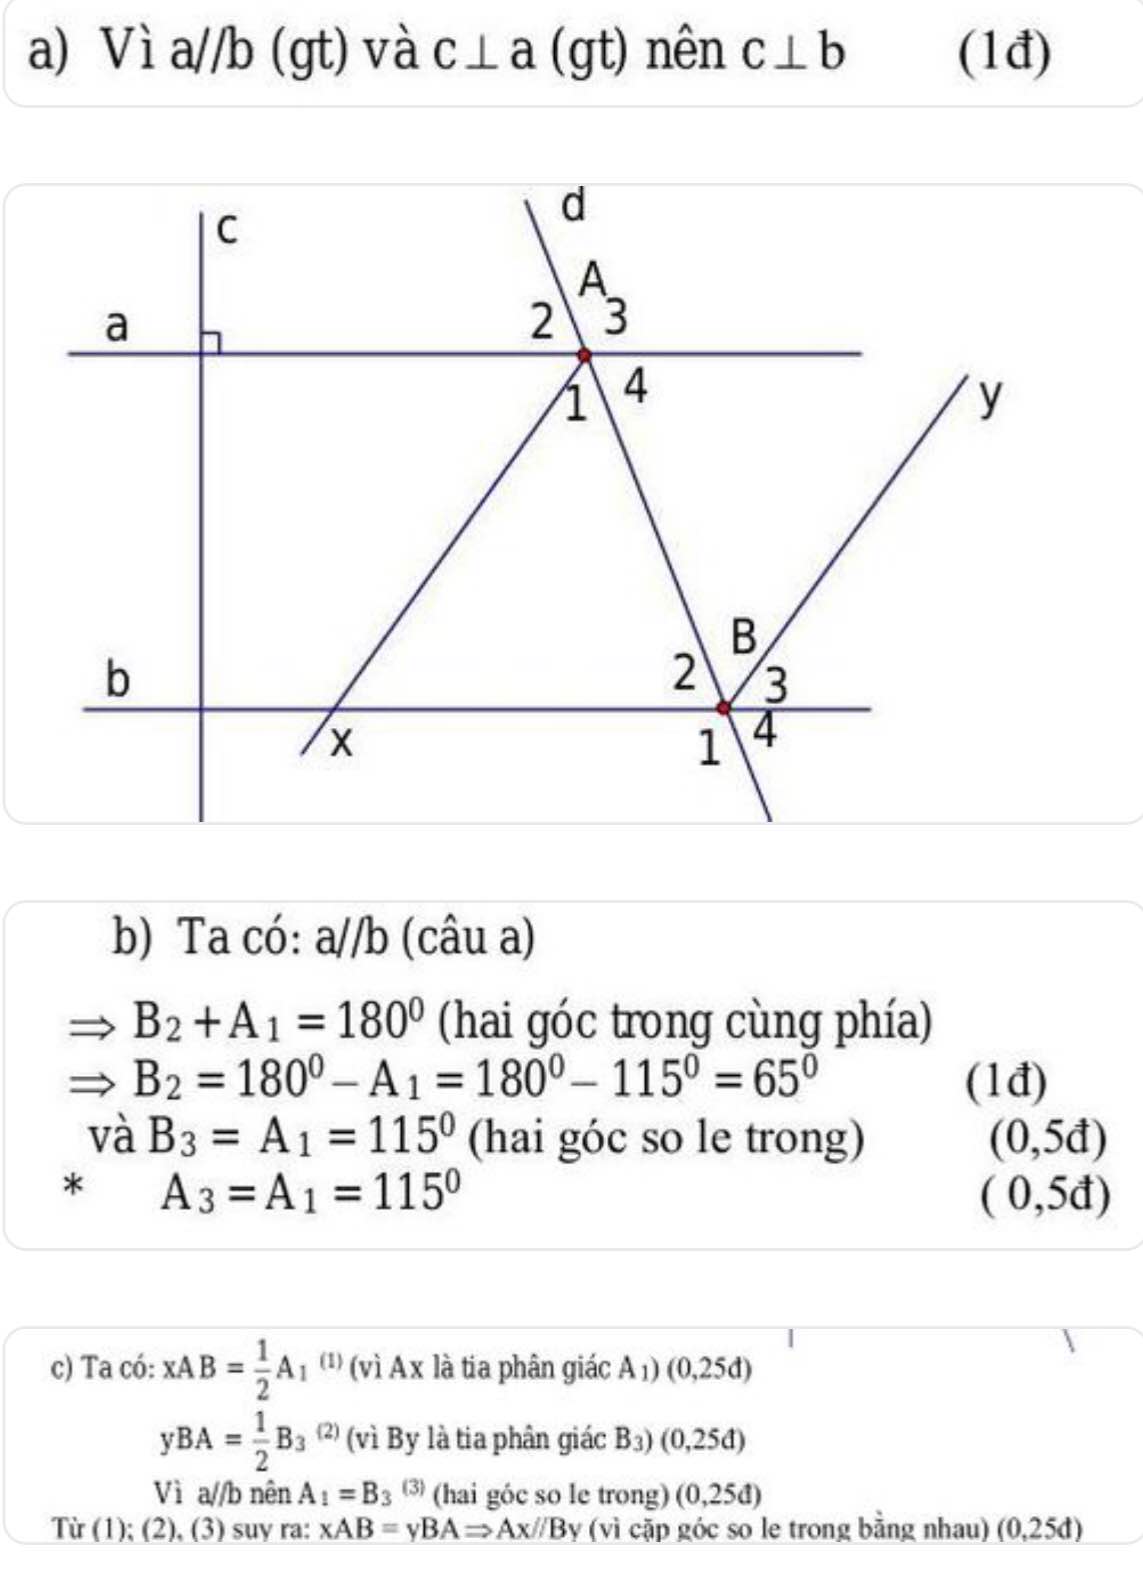 Xem hình vẽ, cho biết a// b và caa) Đường thẳng c có vuông góc với đường  thẳng bkhông? Vì sao?b) Cho đường thẳng d cắt... - Hoc24